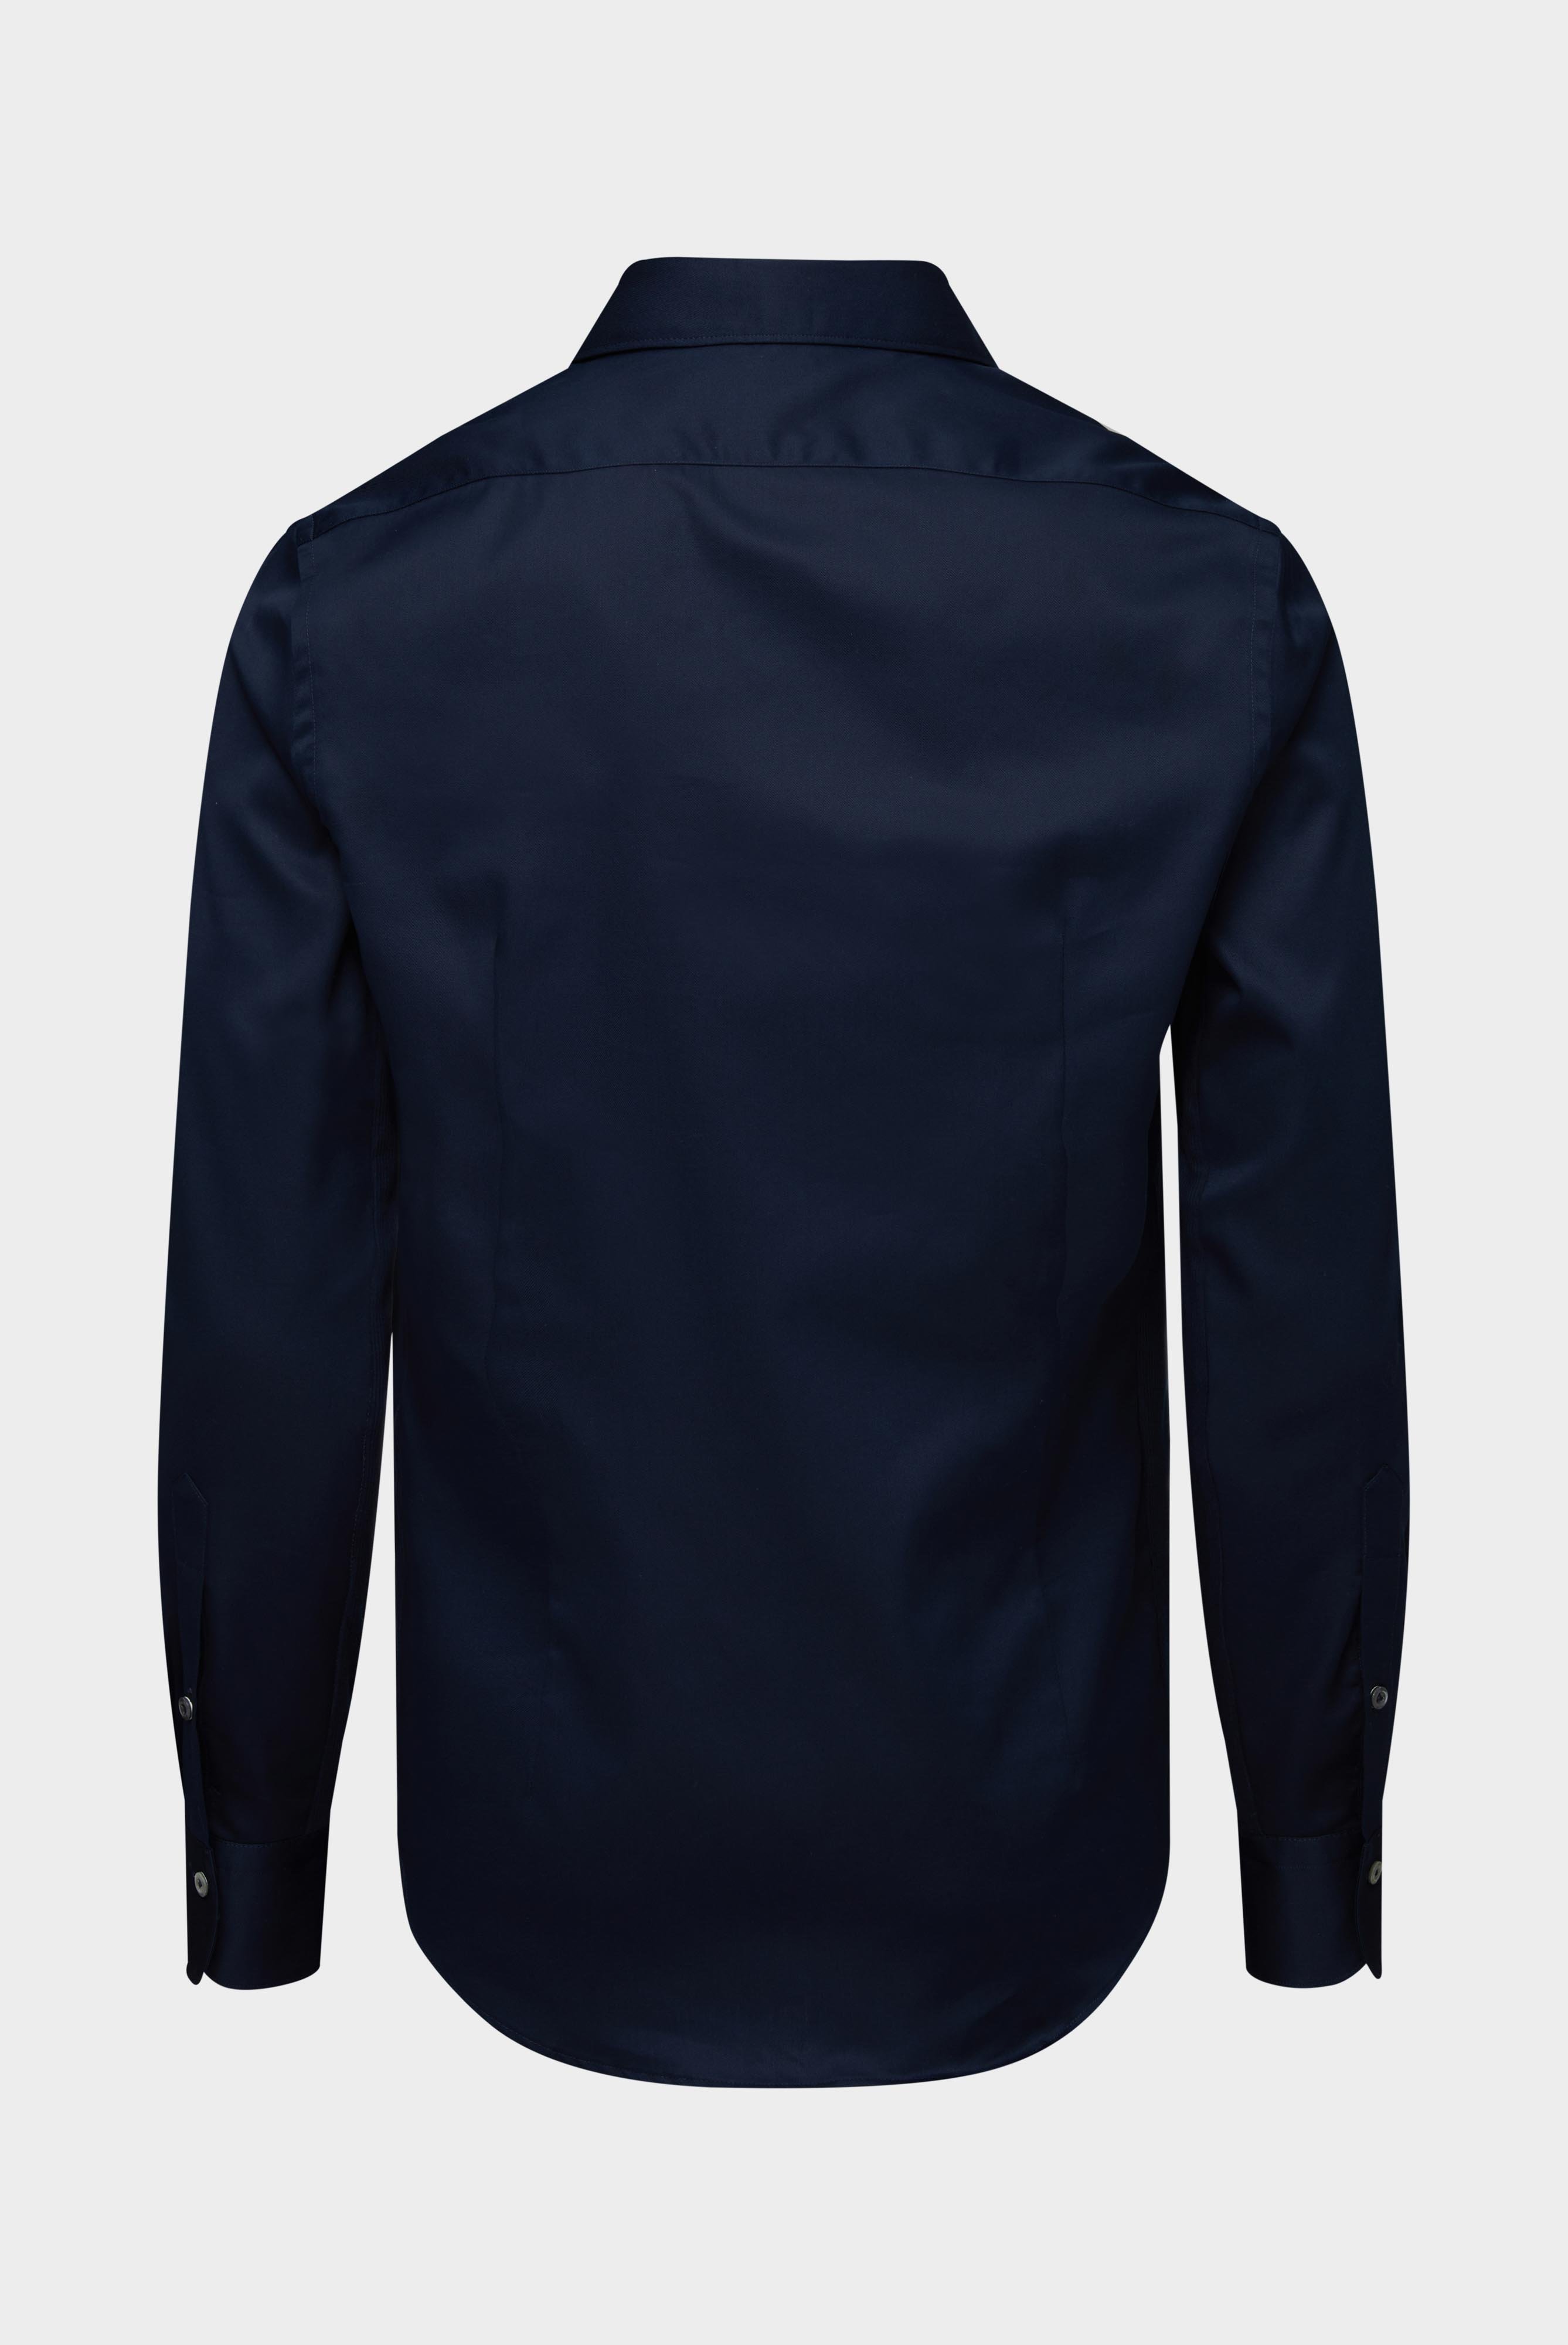 Bügelleichte Hemden+Bügelfreies Hybridshirt mit Jerseyeinsatz Slim Fit+20.2553.0F.132241.785.41